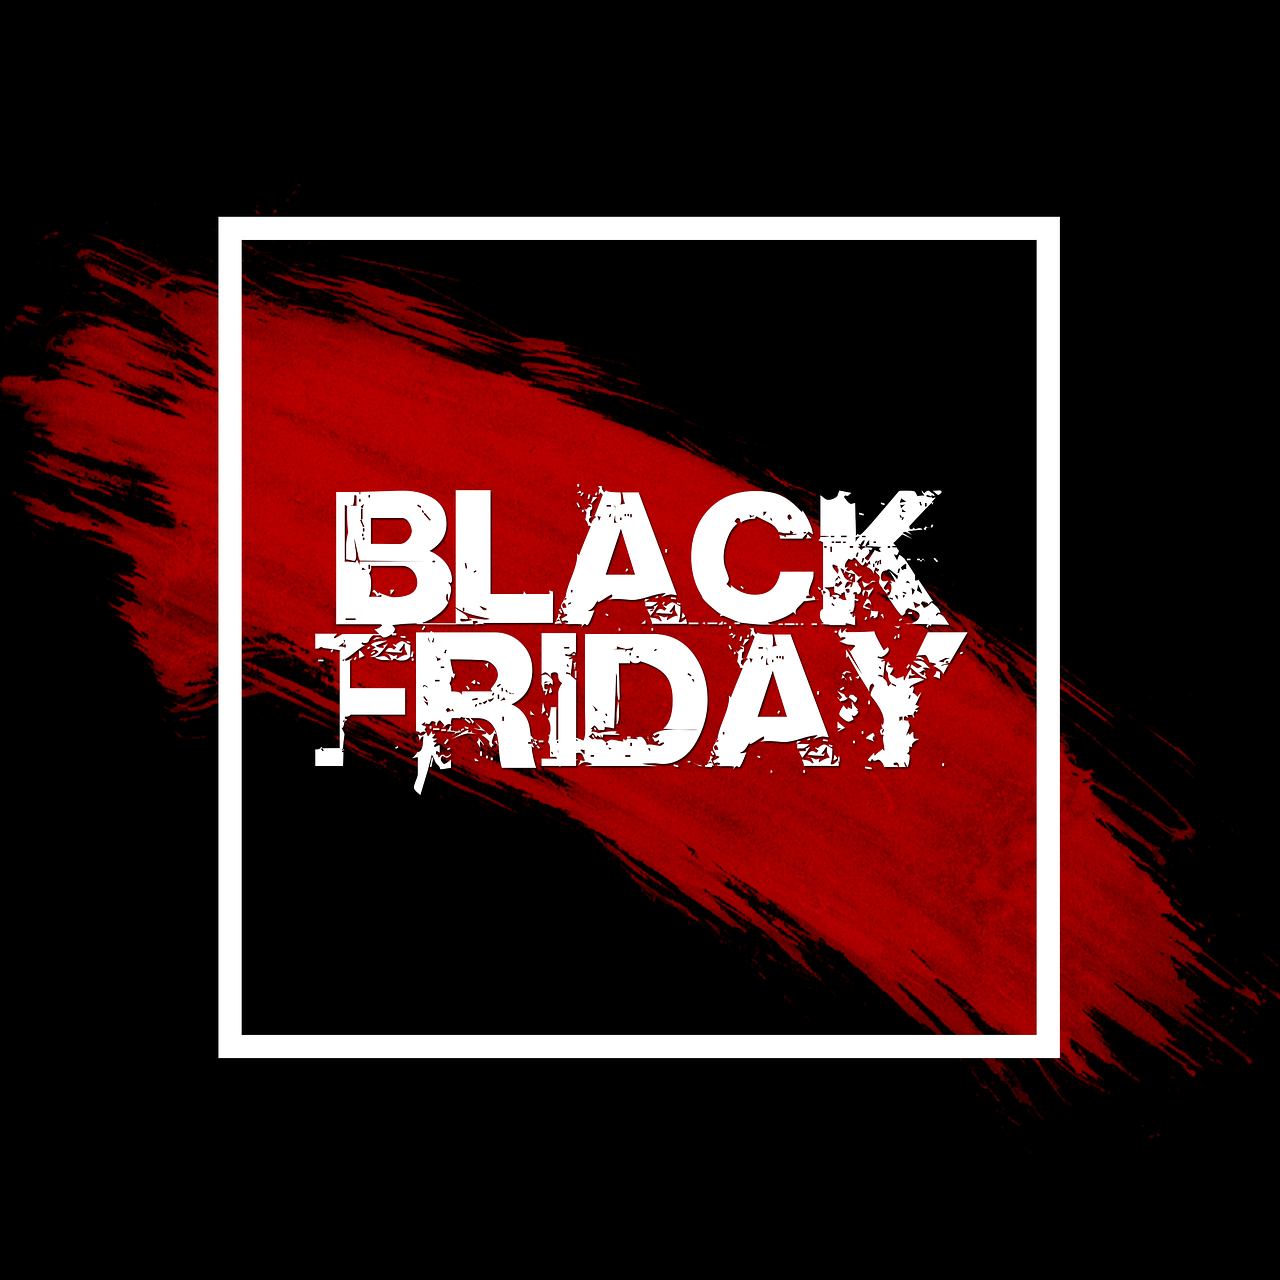 Promoção: Confira a Black Friday da Decolar.com